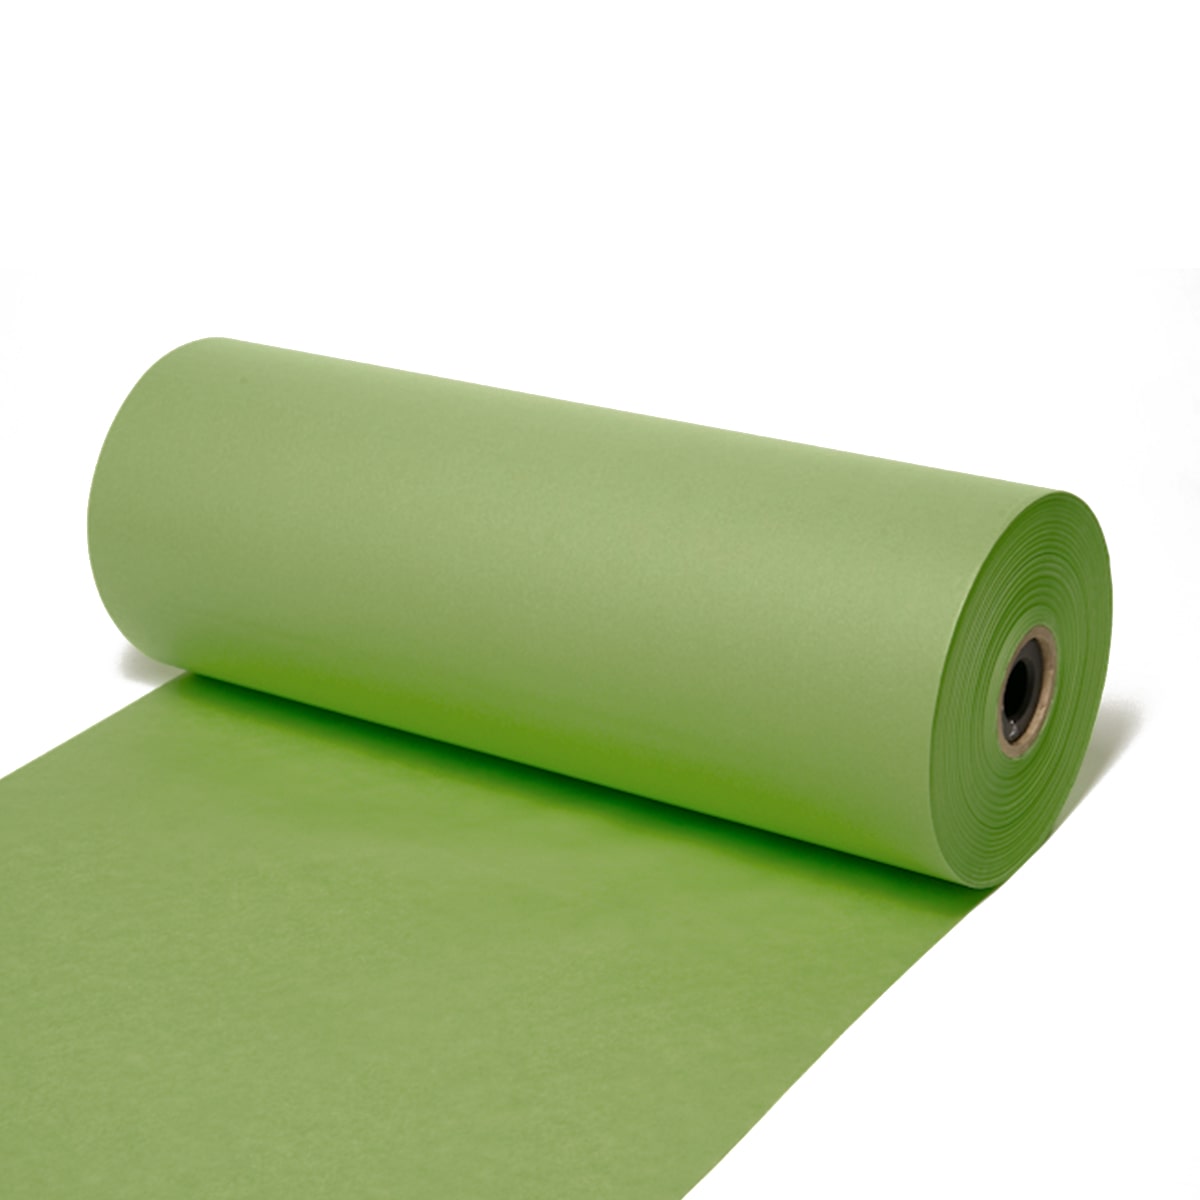 Seidenpapier Schilfgrün, 50 / 75 cm breit, 500 Meter / Rolle